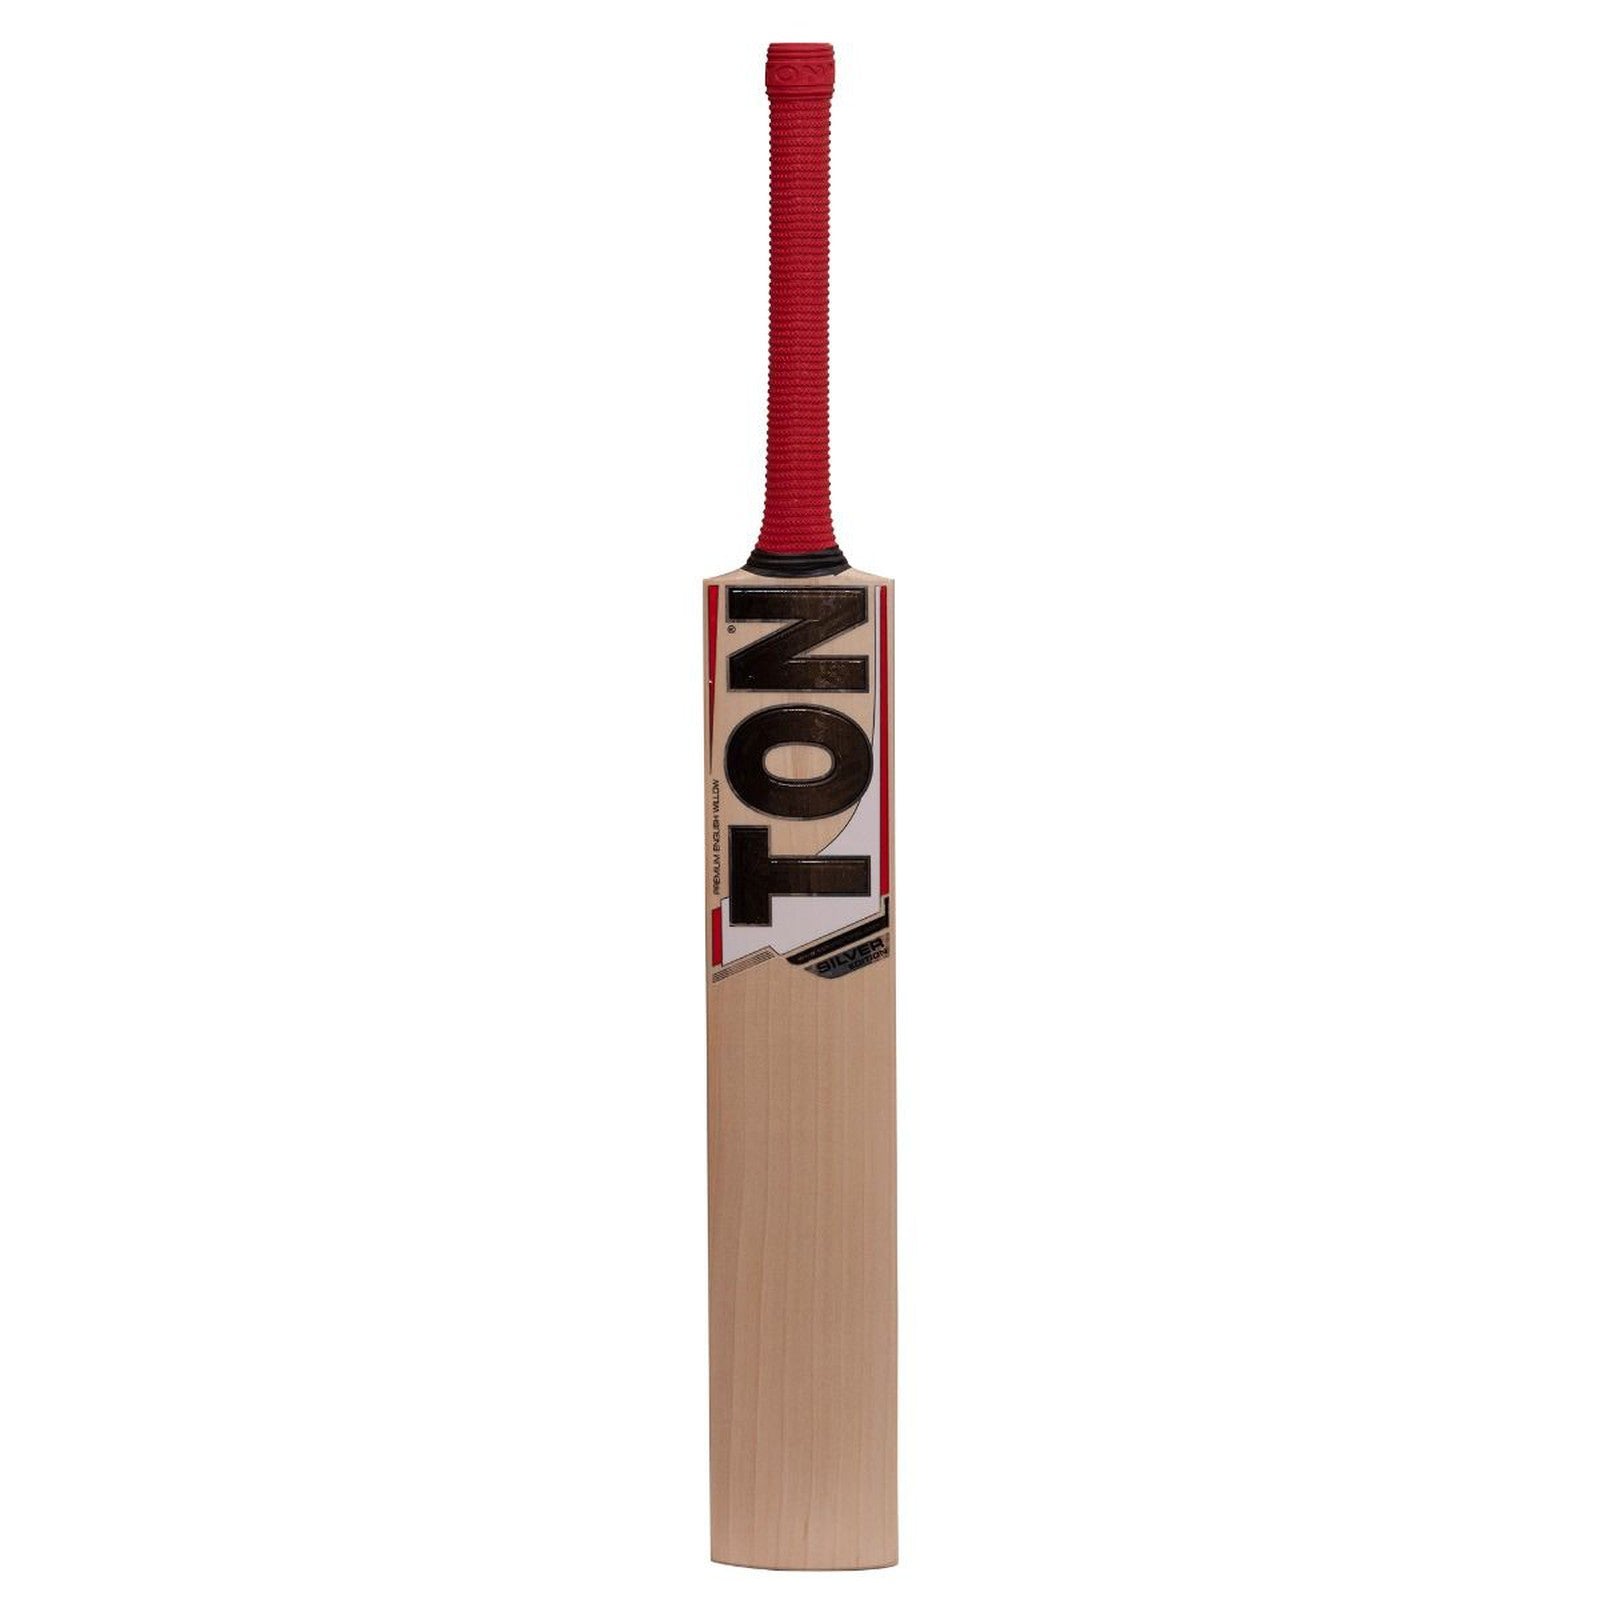 TON Silver Edition Cricket Bat - Senior